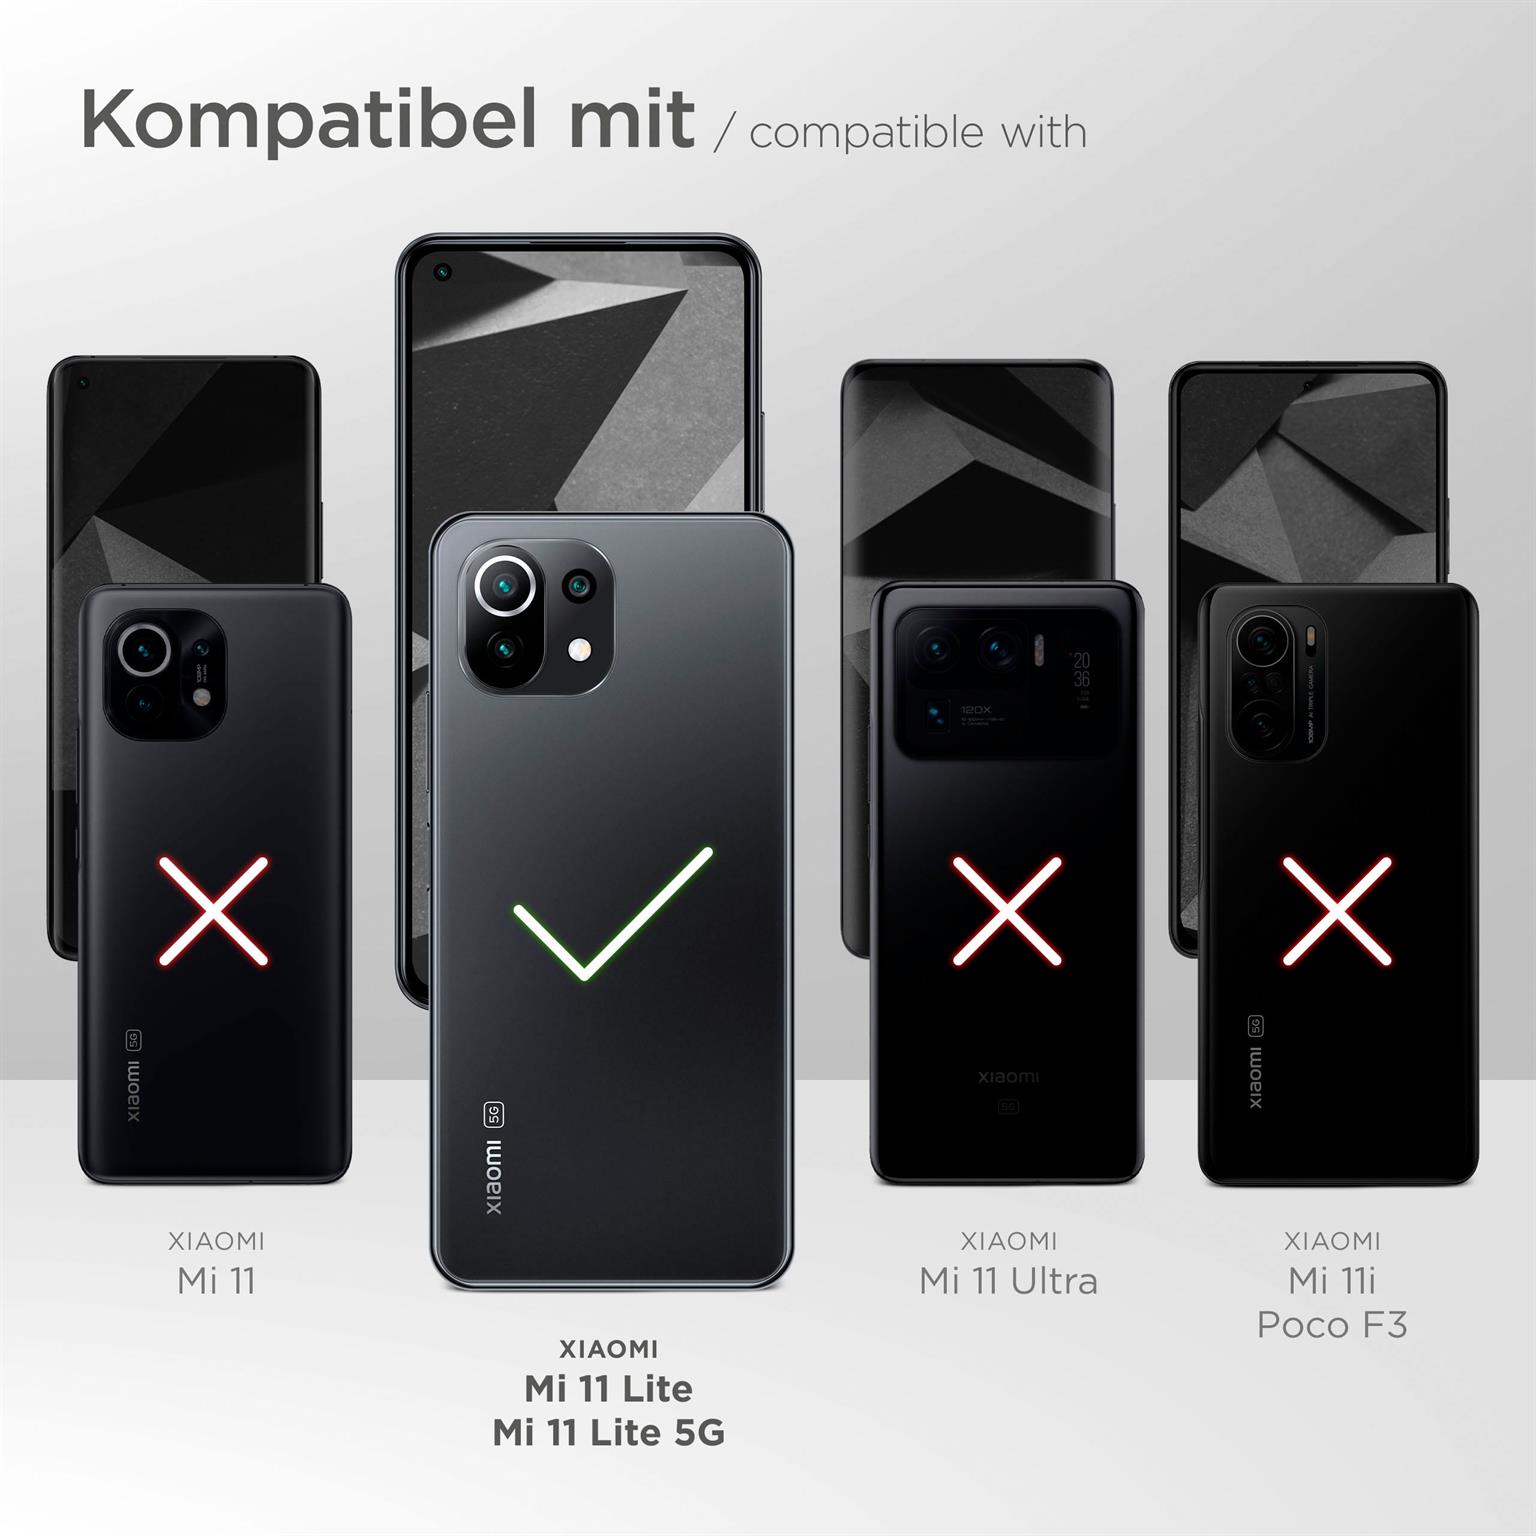 moex Alpha Case für Xiaomi Mi 11 Lite 5G – Extrem dünne, minimalistische Hülle in seidenmatt